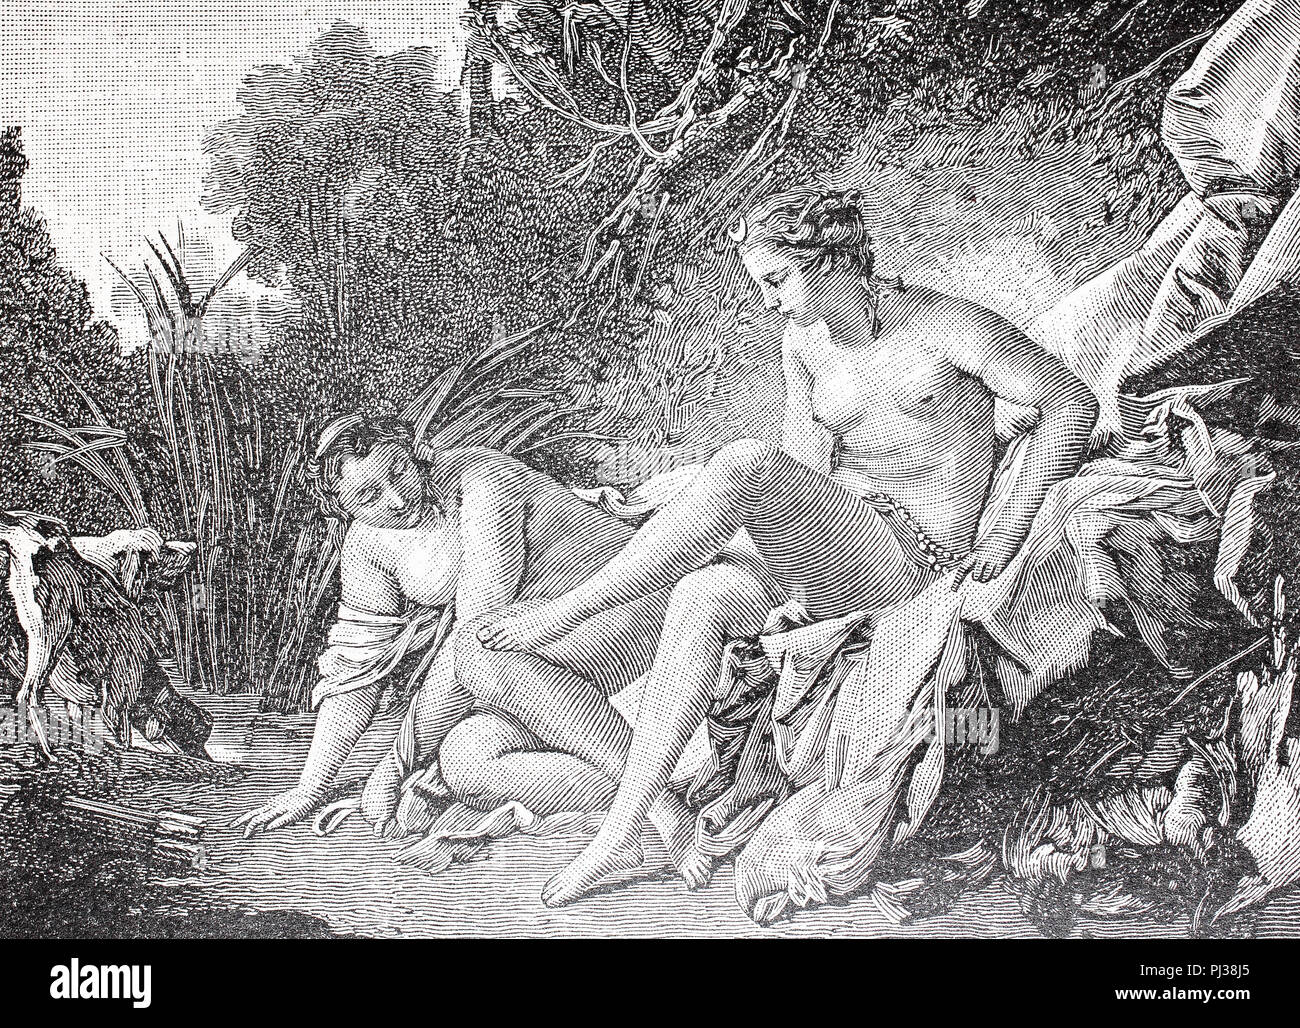 Diana, dea della caccia, la luna e la natura nella mitologia romana dopo la sua balneazione, digital migliorata la riproduzione di un originale a partire dall'anno 1895 Foto Stock